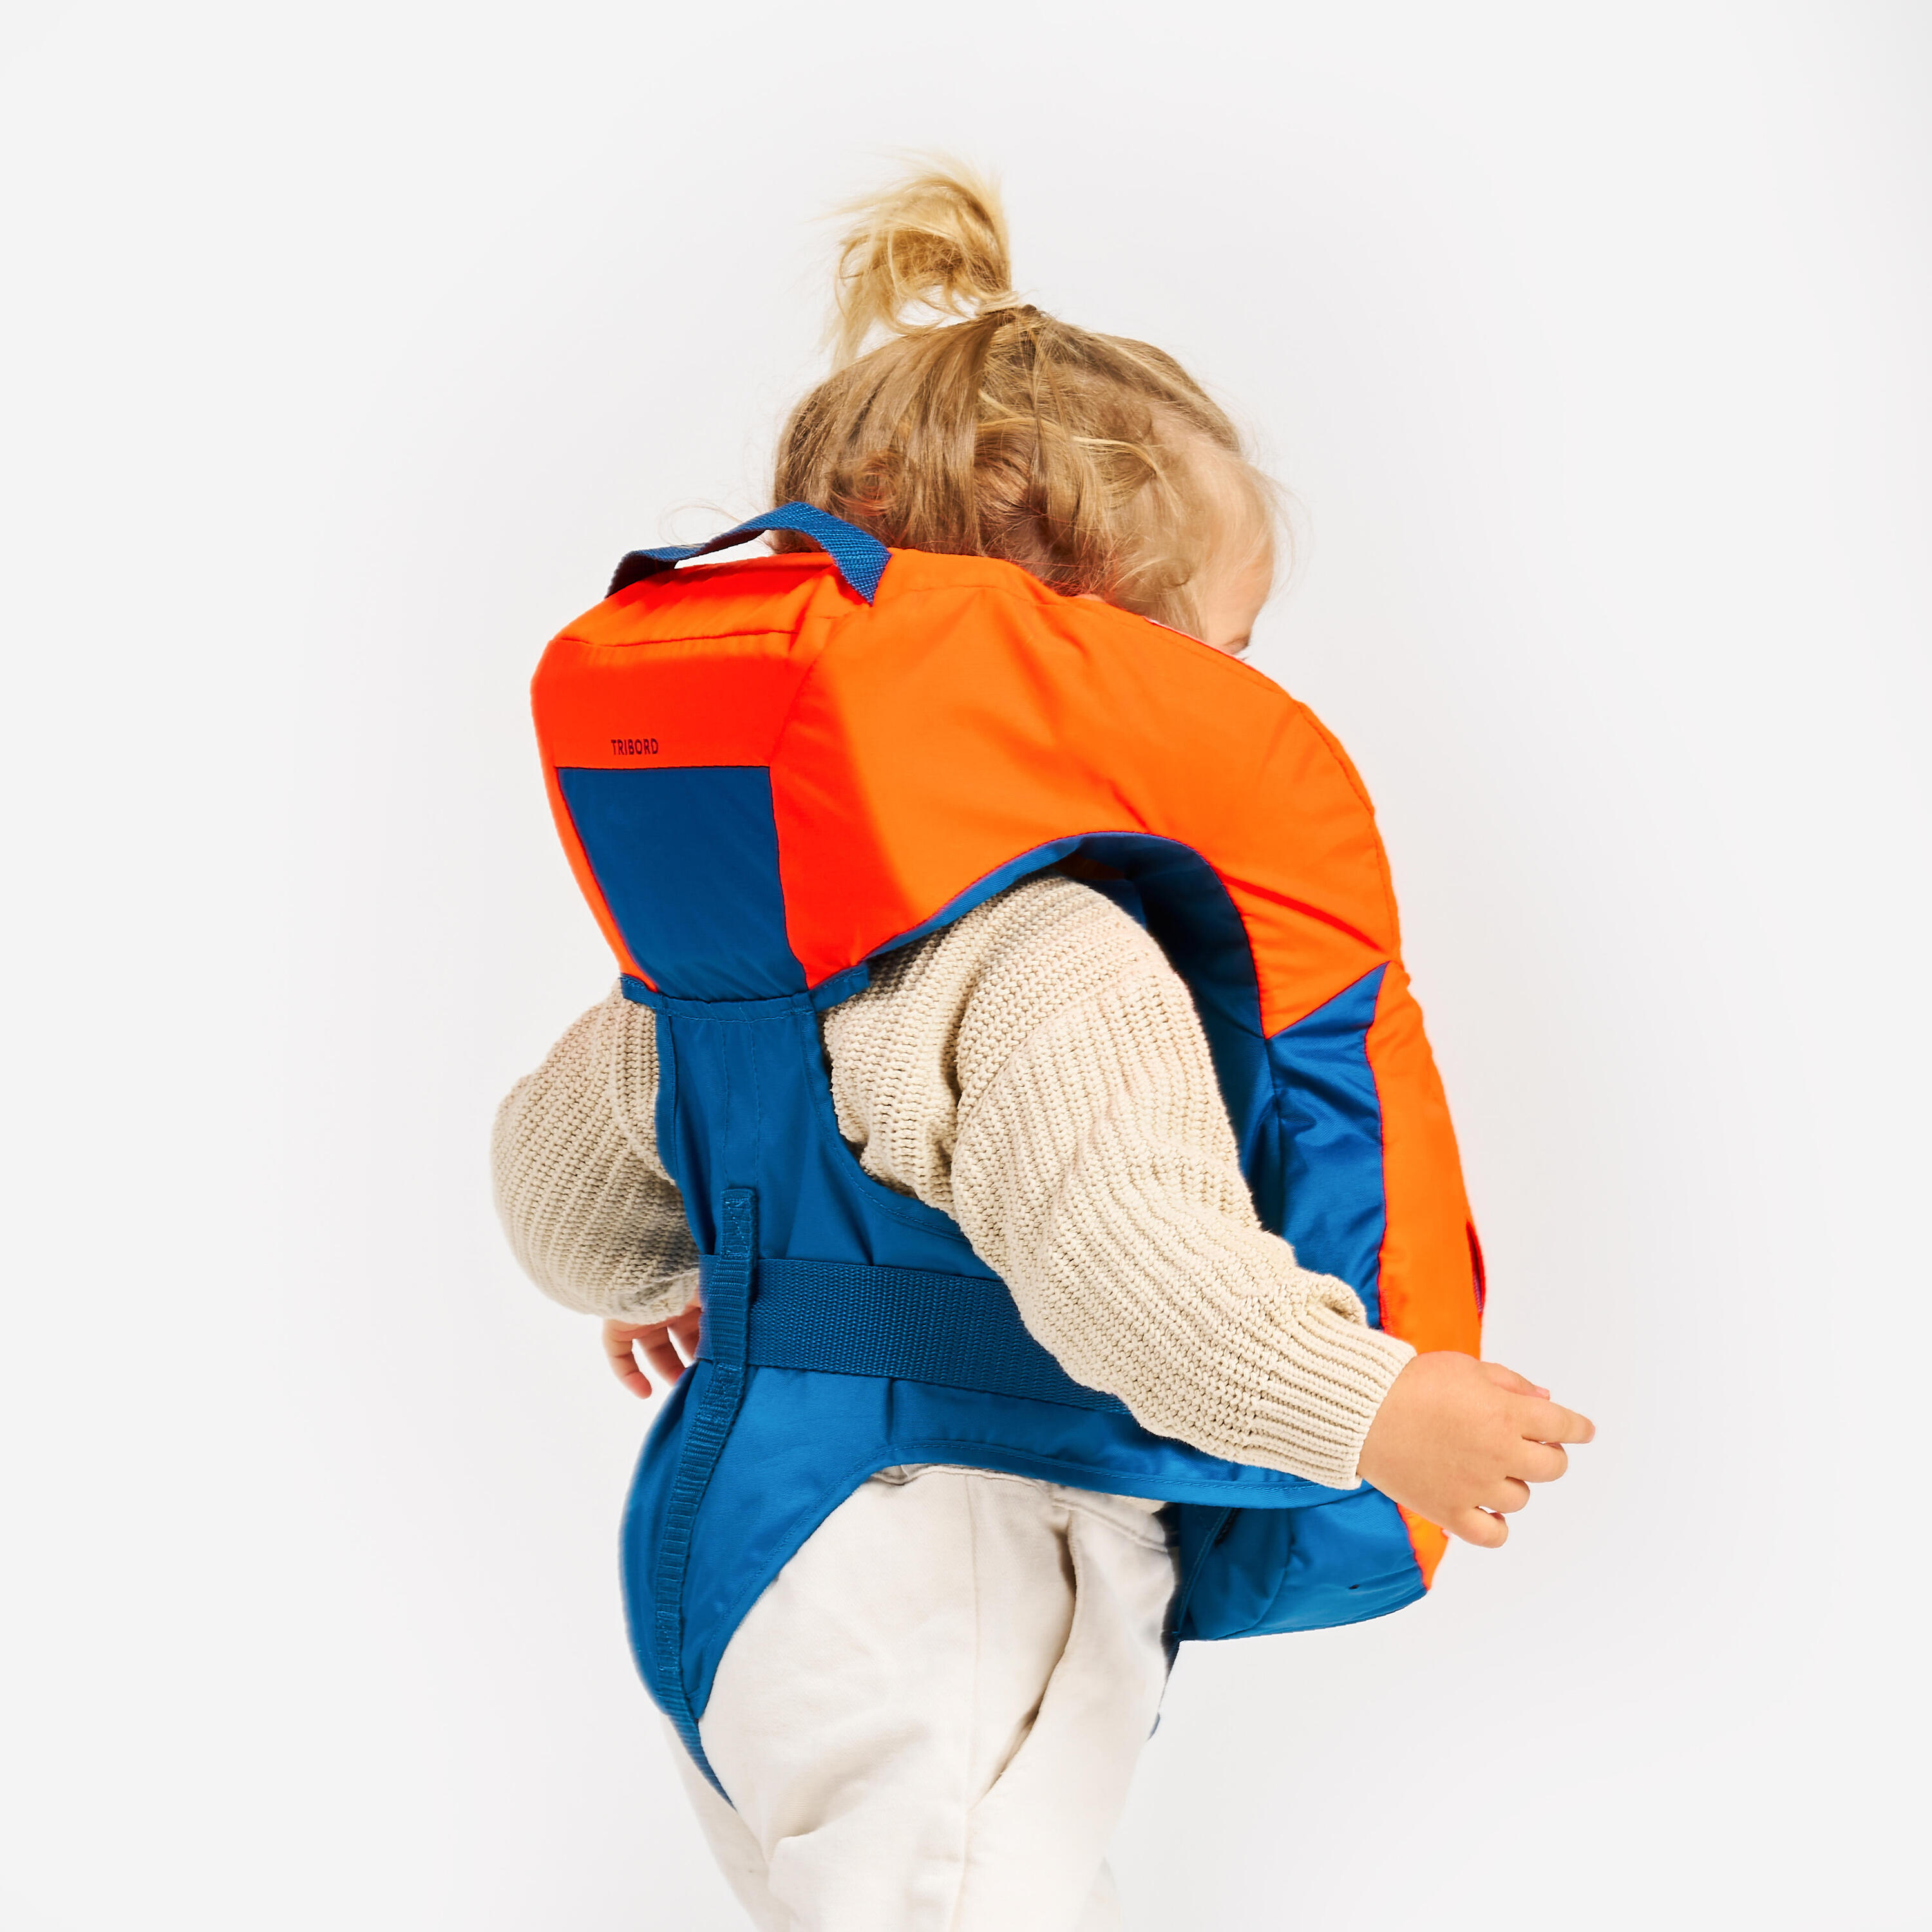 LJ100N easy baby life jacket for babies and infants 10-15 kg orange blue 4/15